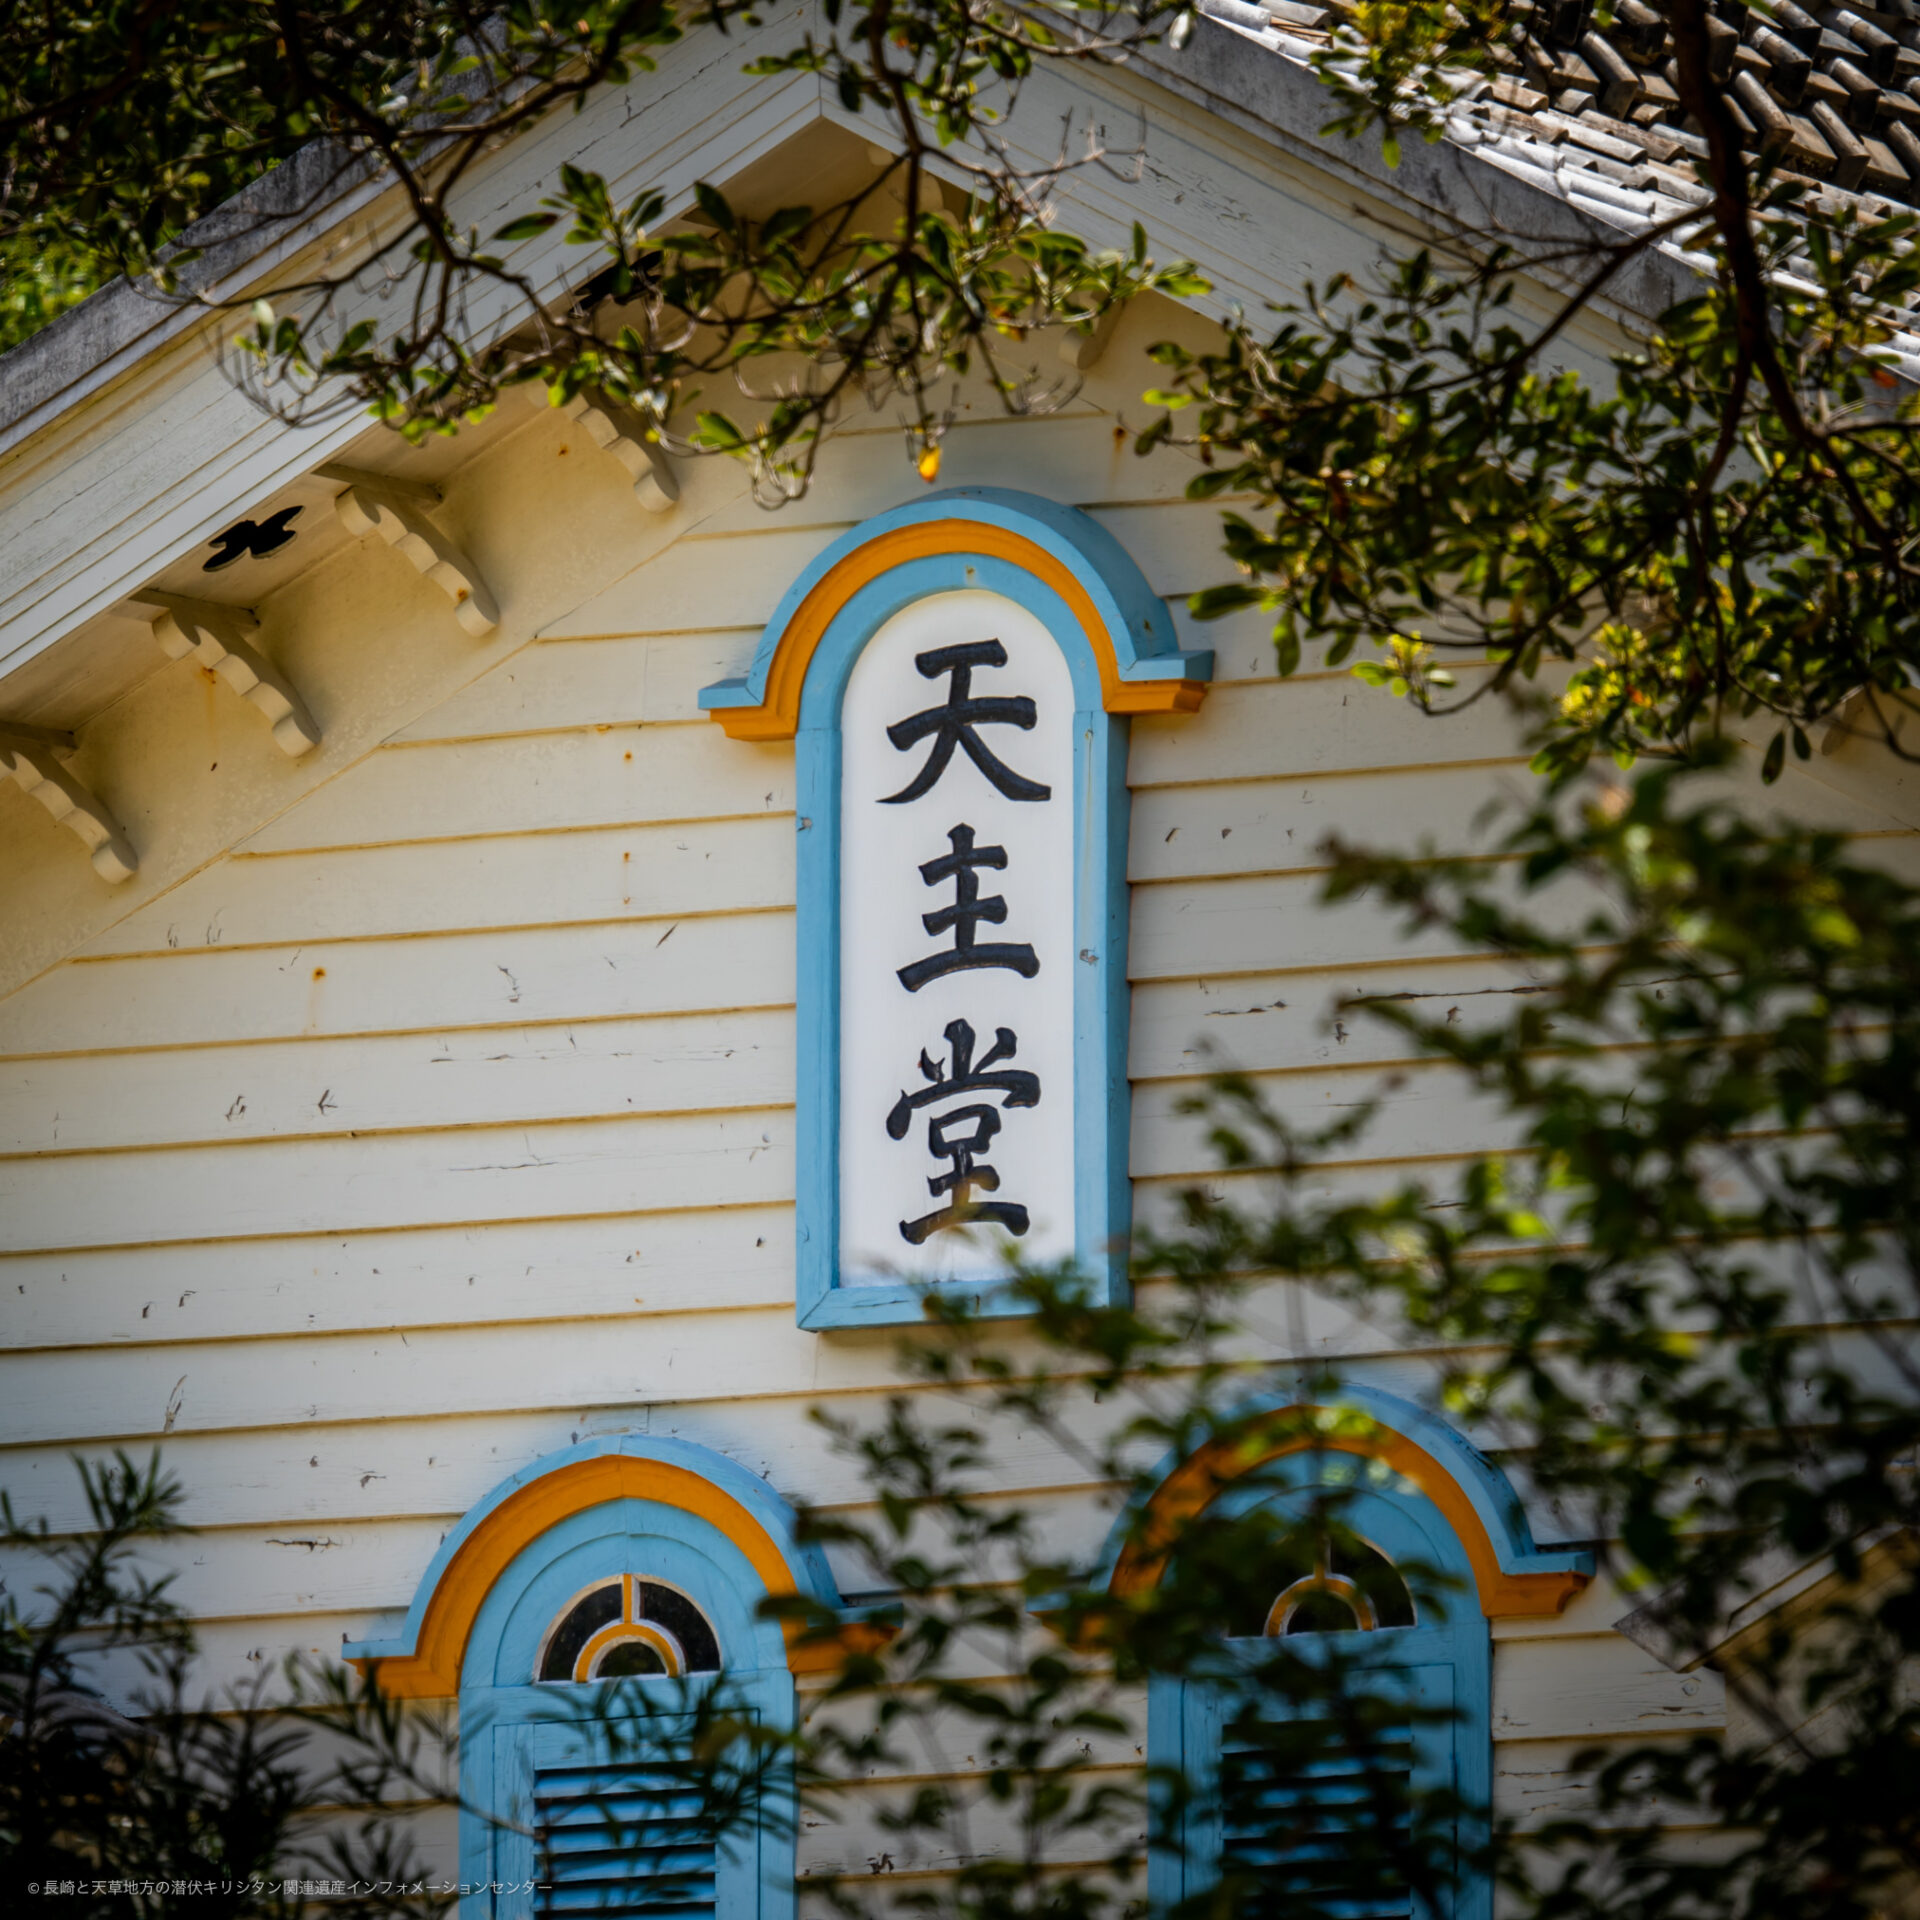 Egami Church, See & Do